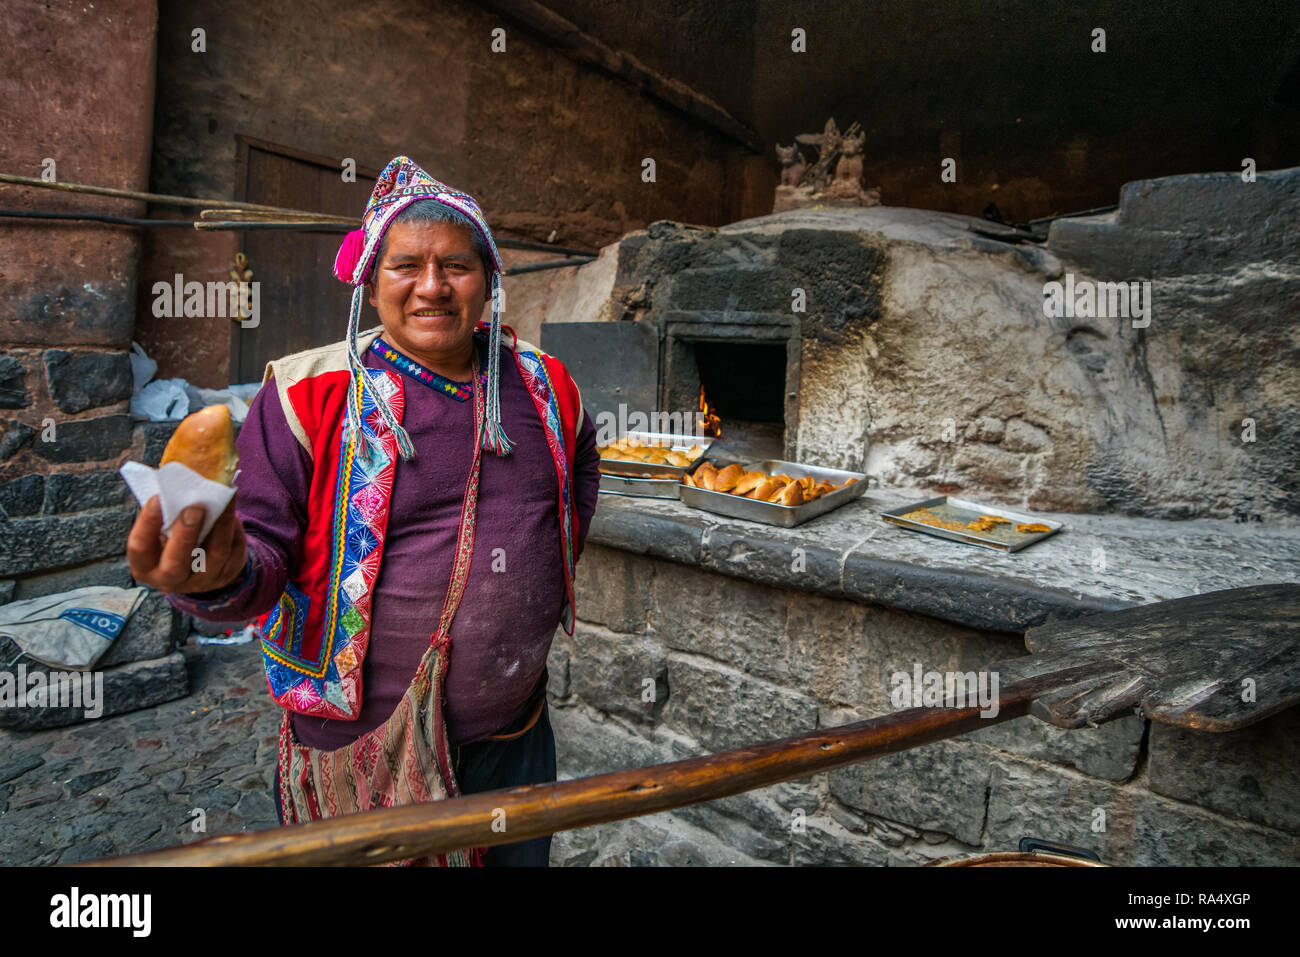 PISAC MARKET, Perù - Settembre 2018 : uomo baker nella tradizionale Peruviano panno e hat, tenendo sfornato fresco empanada, stando in piedi vicino all'aperto stufa in pietra Foto Stock